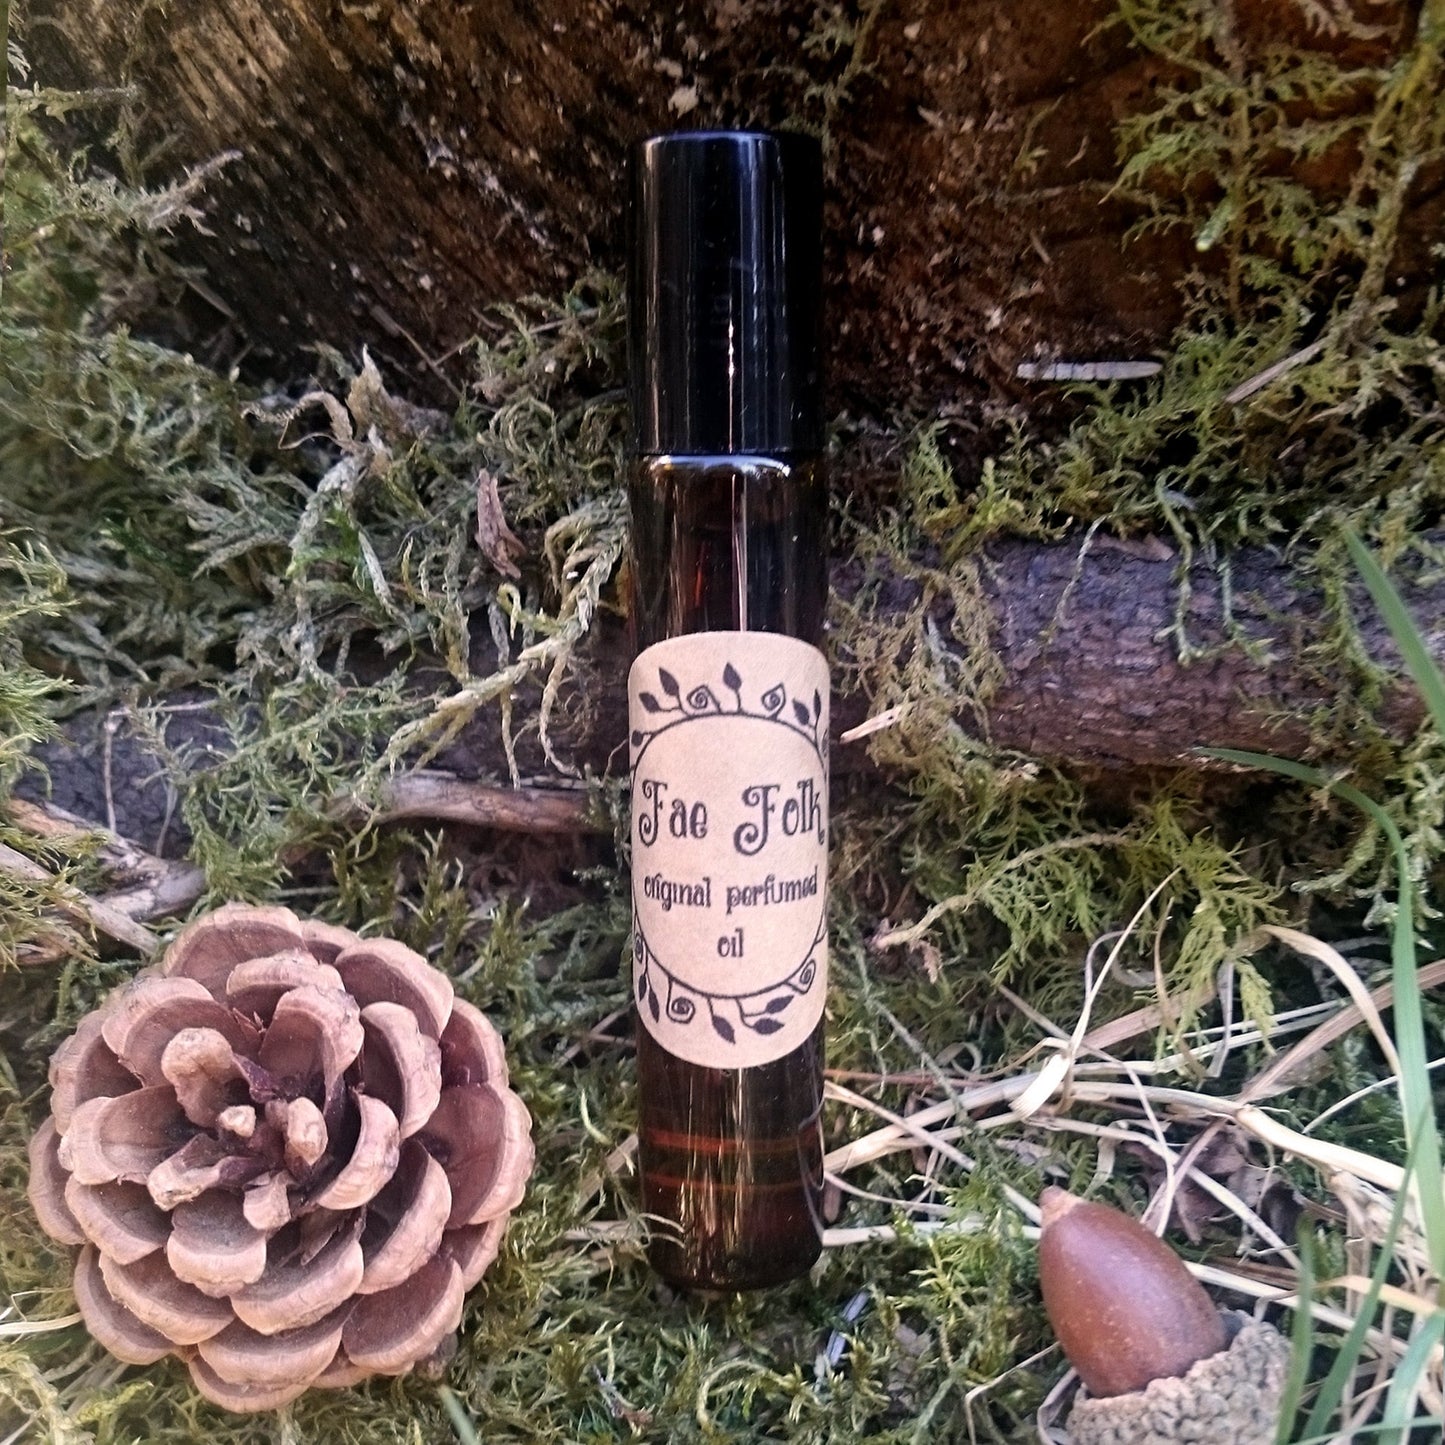 Fae Folk Original Perfumed Oil - Spring Summer Fairy Pixie Roll On Fragrance - Floral Violet Forest Berries Bergamot Vetiver Vegan Oil Blend